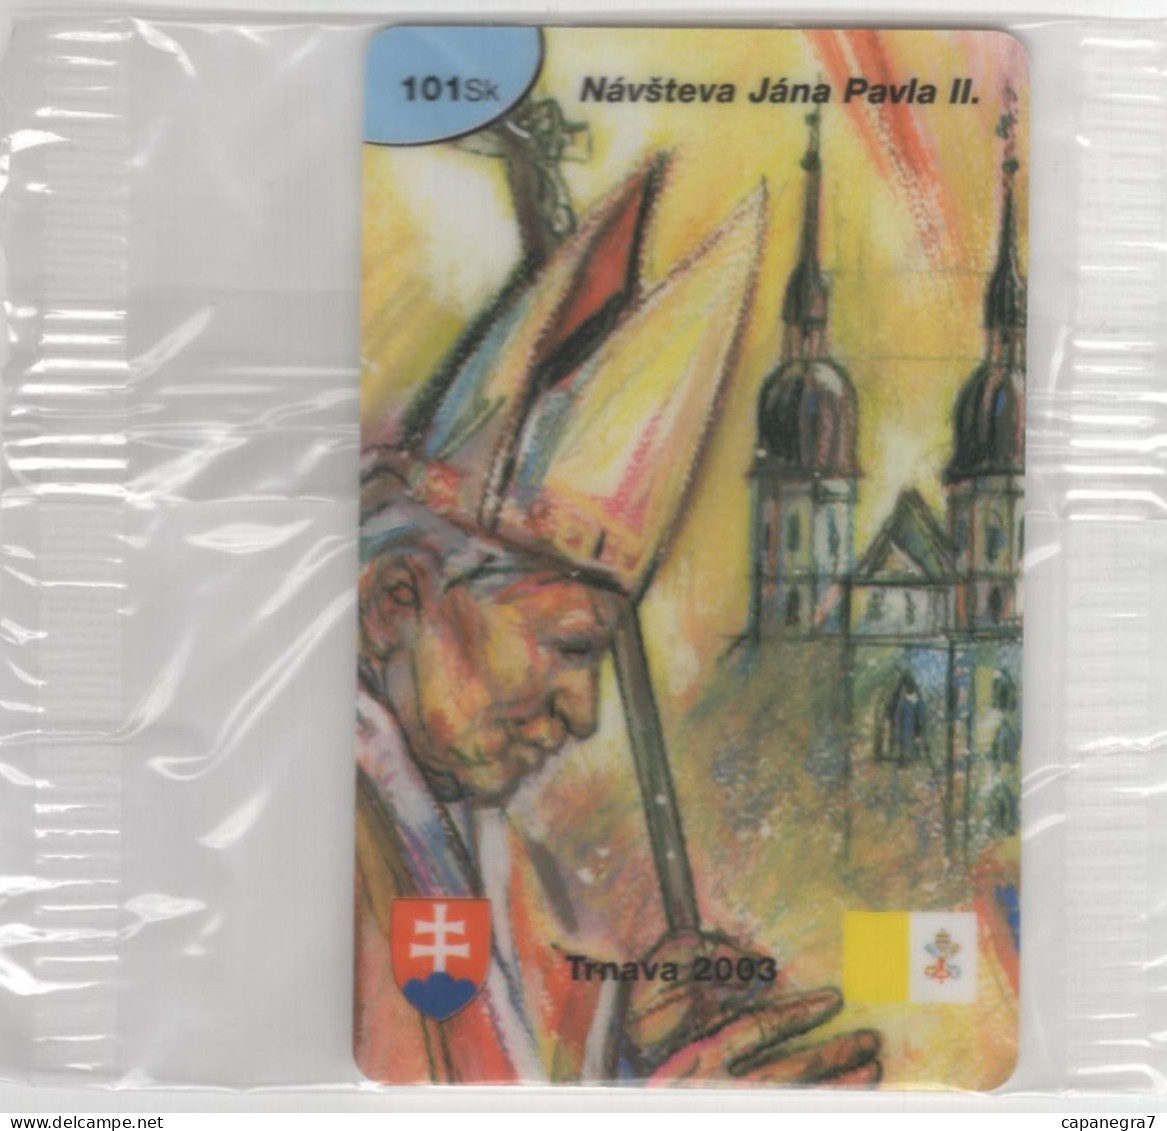 Pope John Paulu II. - Trnava 2003, Prepaid Calling Card, 101 Sk., 1.250 Pc., GlobalIPhone, Slovakia, Mint, Packed - Slovakia